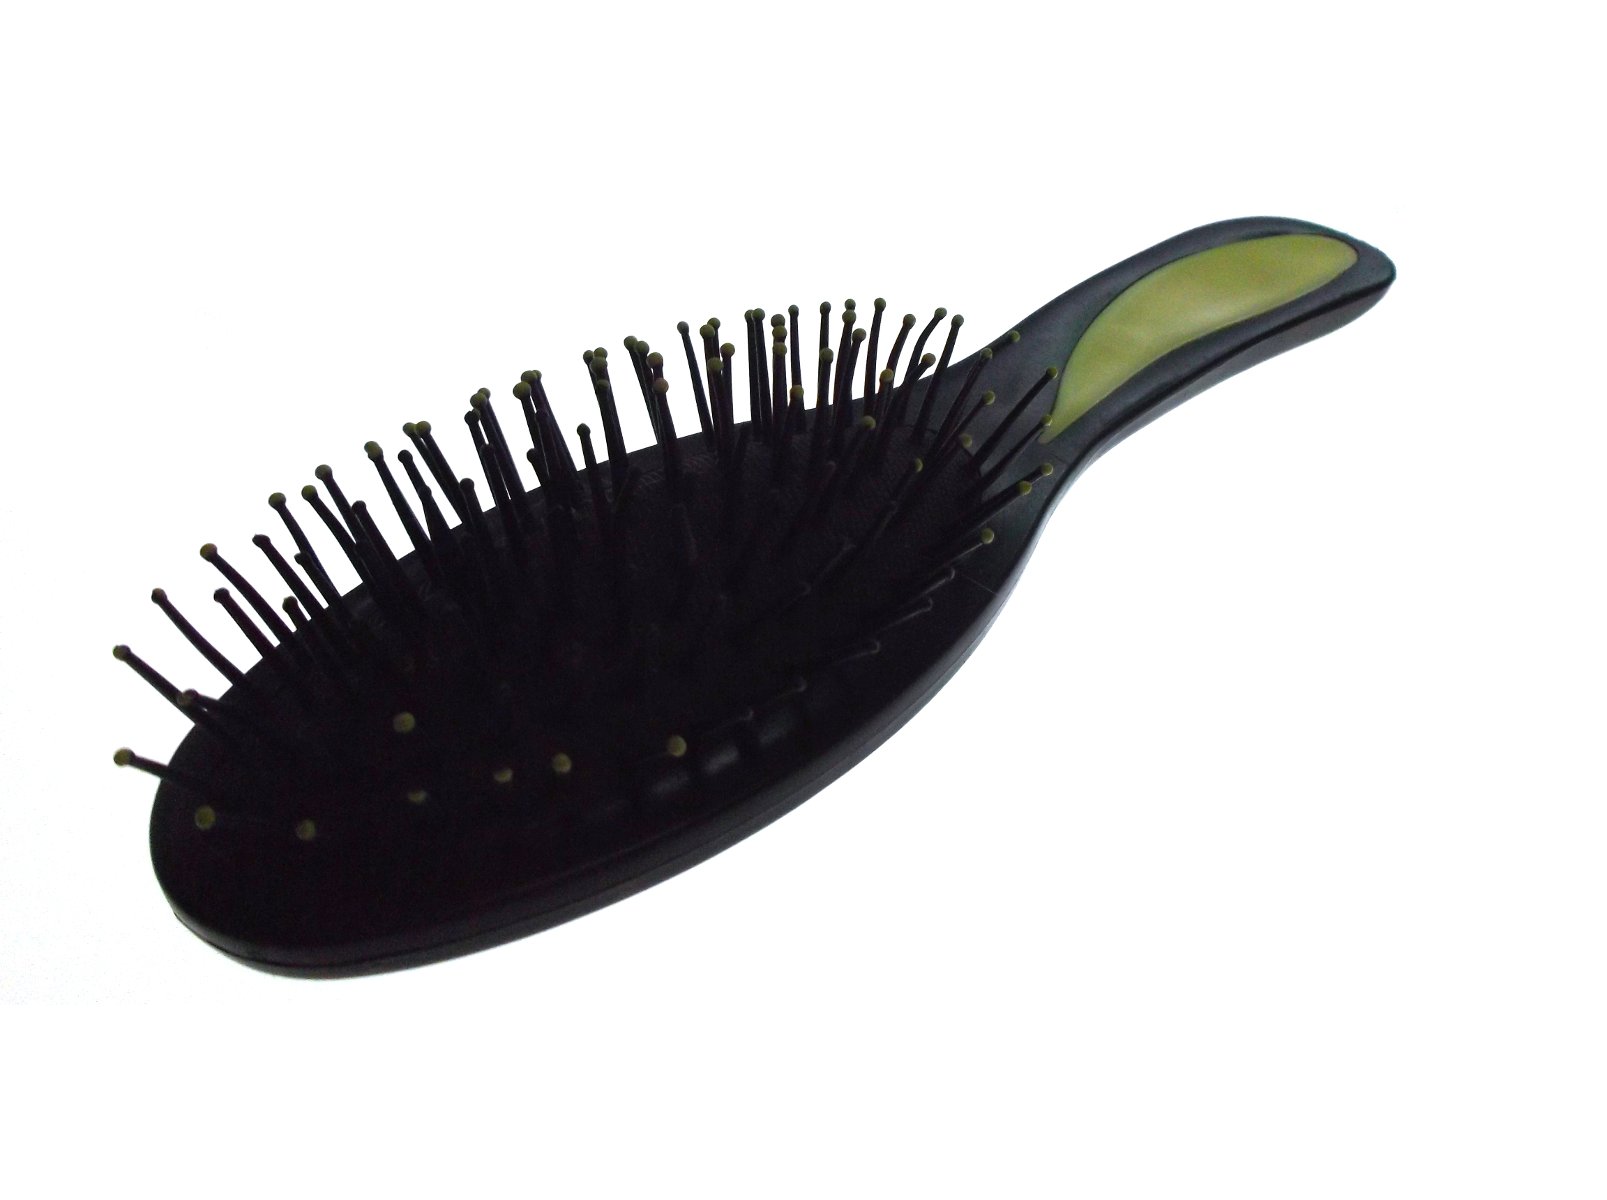 Black hair brush photo